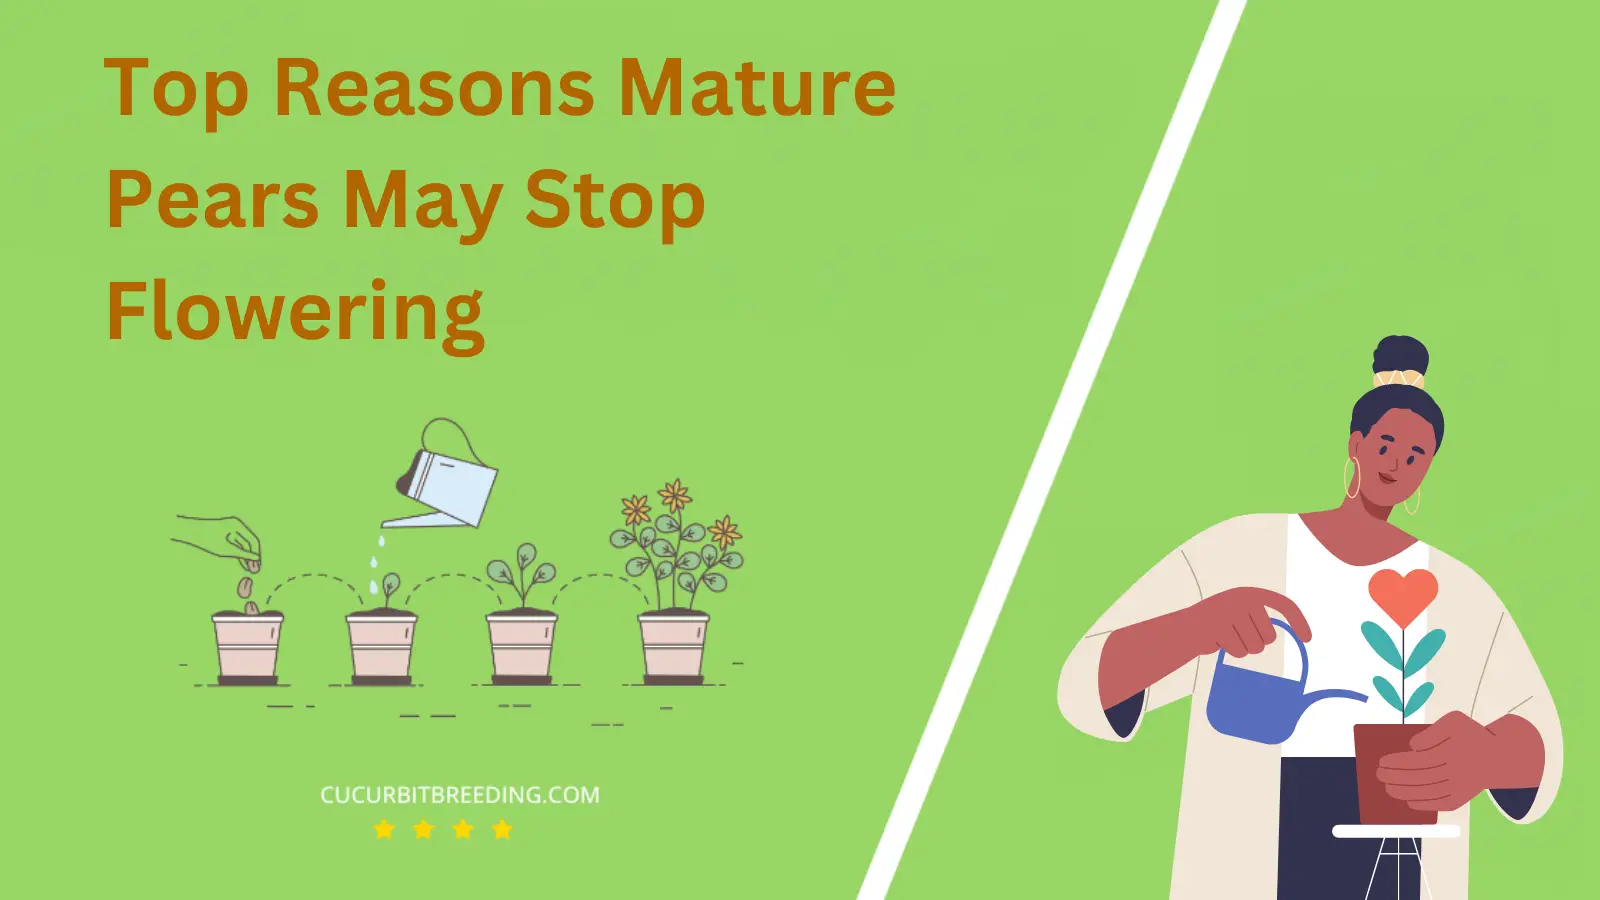 Top Reasons Mature Pears May Stop Flowering